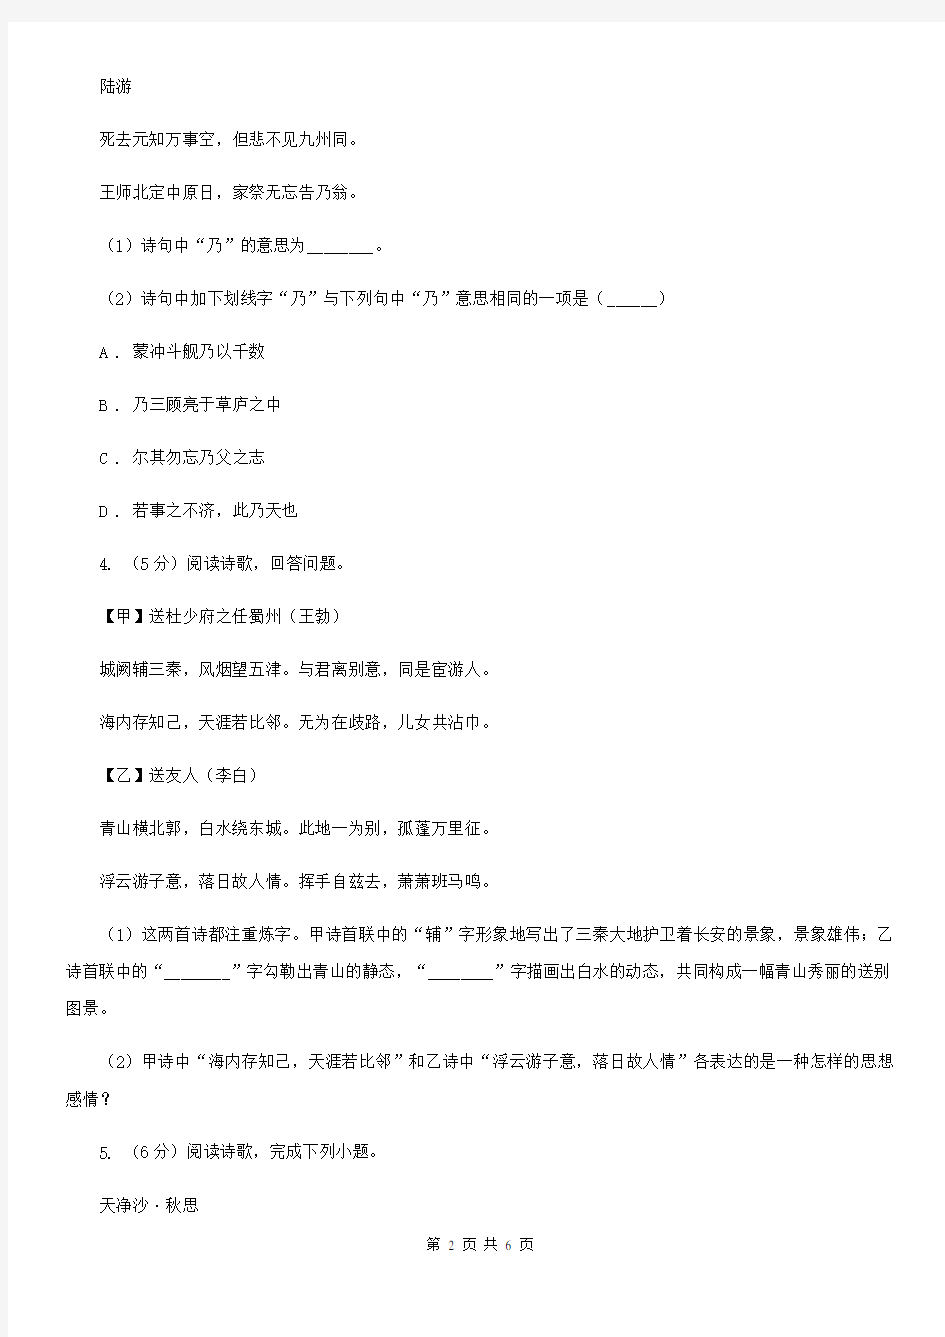 江西省中考语文真题分类汇编专题04：诗歌鉴赏(II )卷